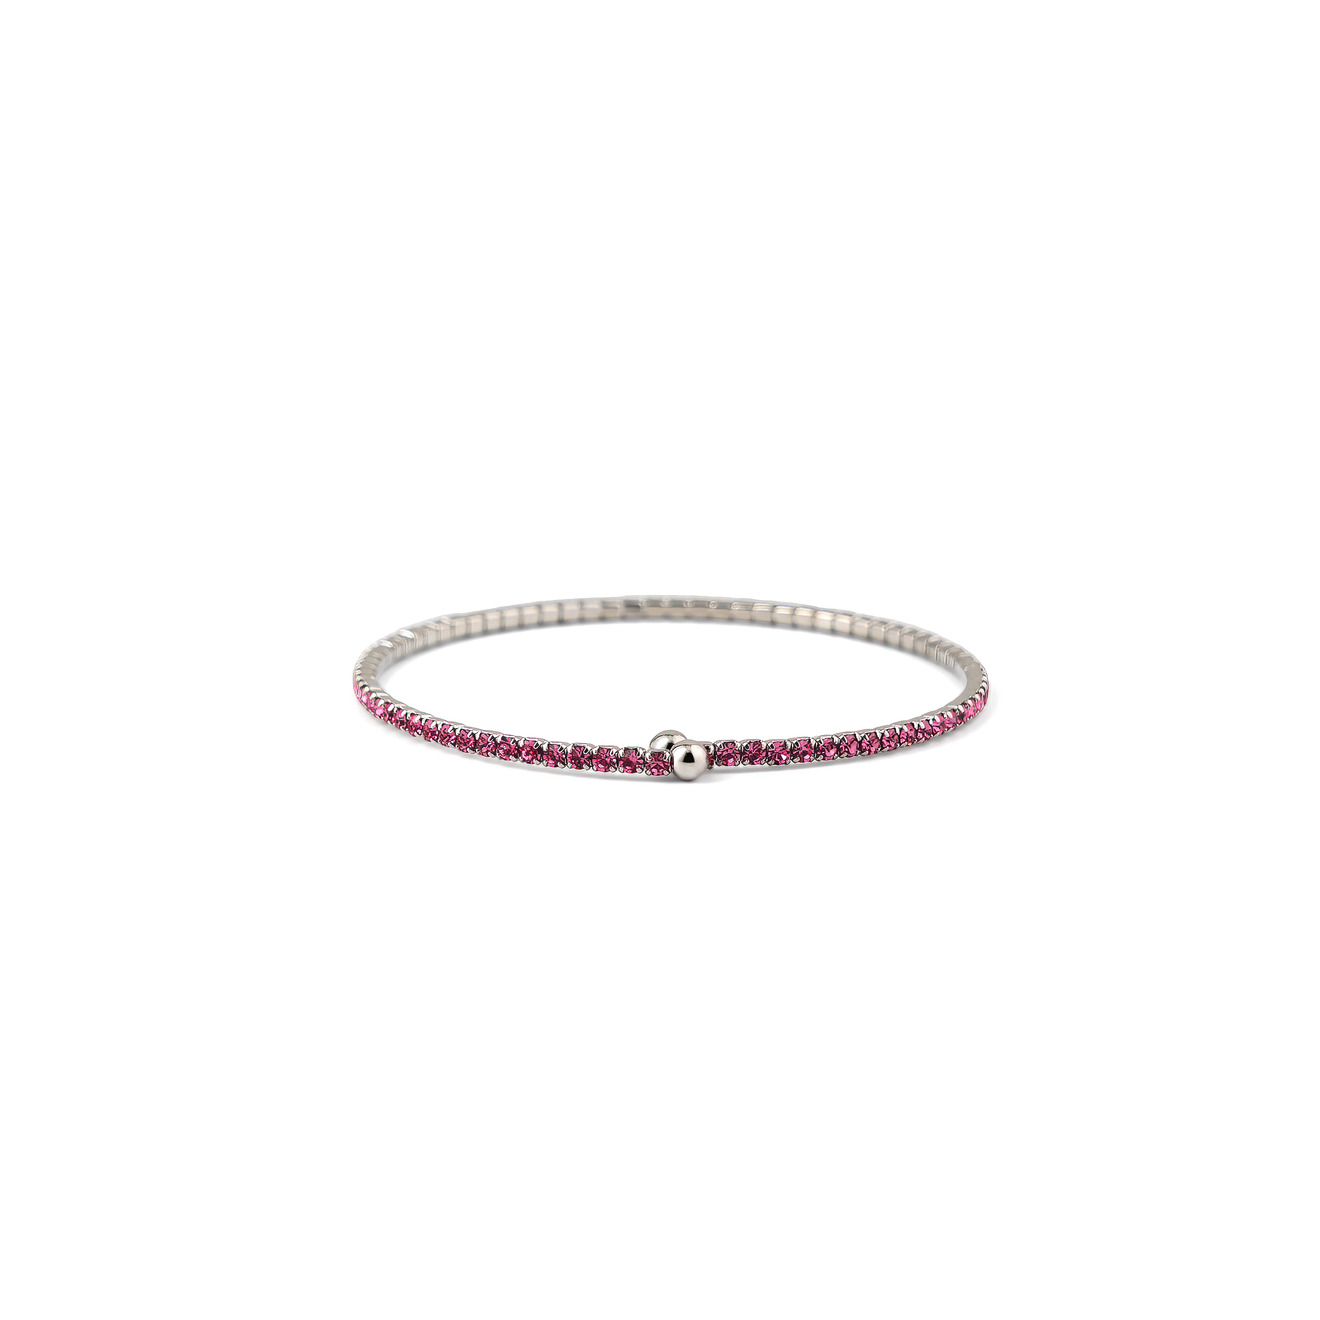 Herald Percy Серебристый браслет с ярко-розовыми кристаллами herald percy серебристый тонкий браслет с розовыми кристаллами